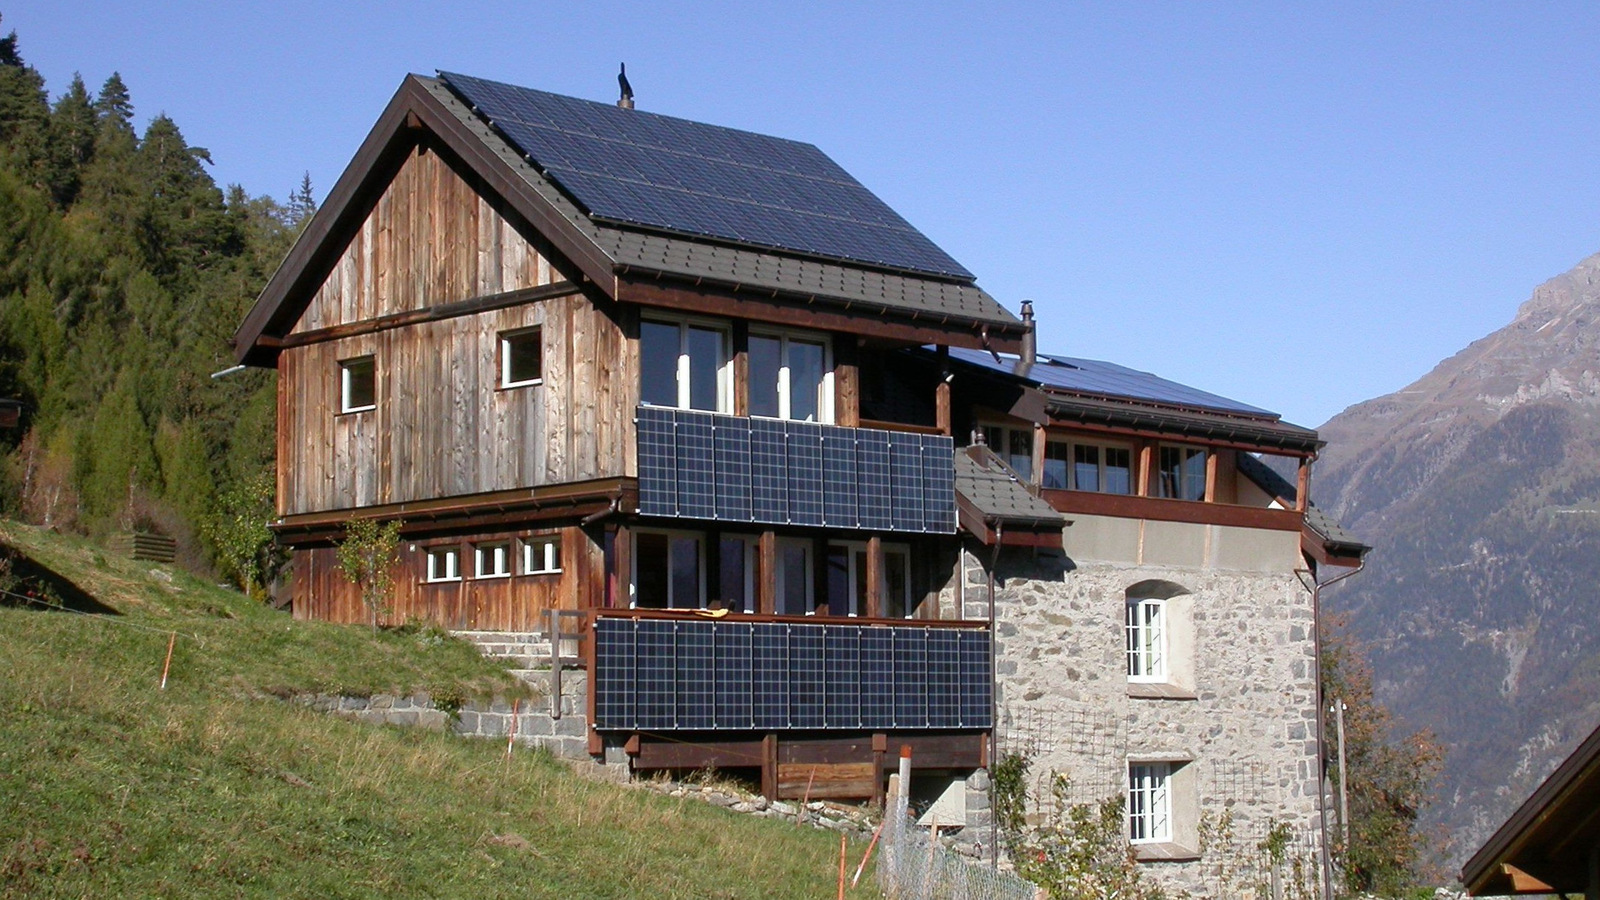 Kostal rät: Investition in eine Photovoltaikanlage nicht aufschieben